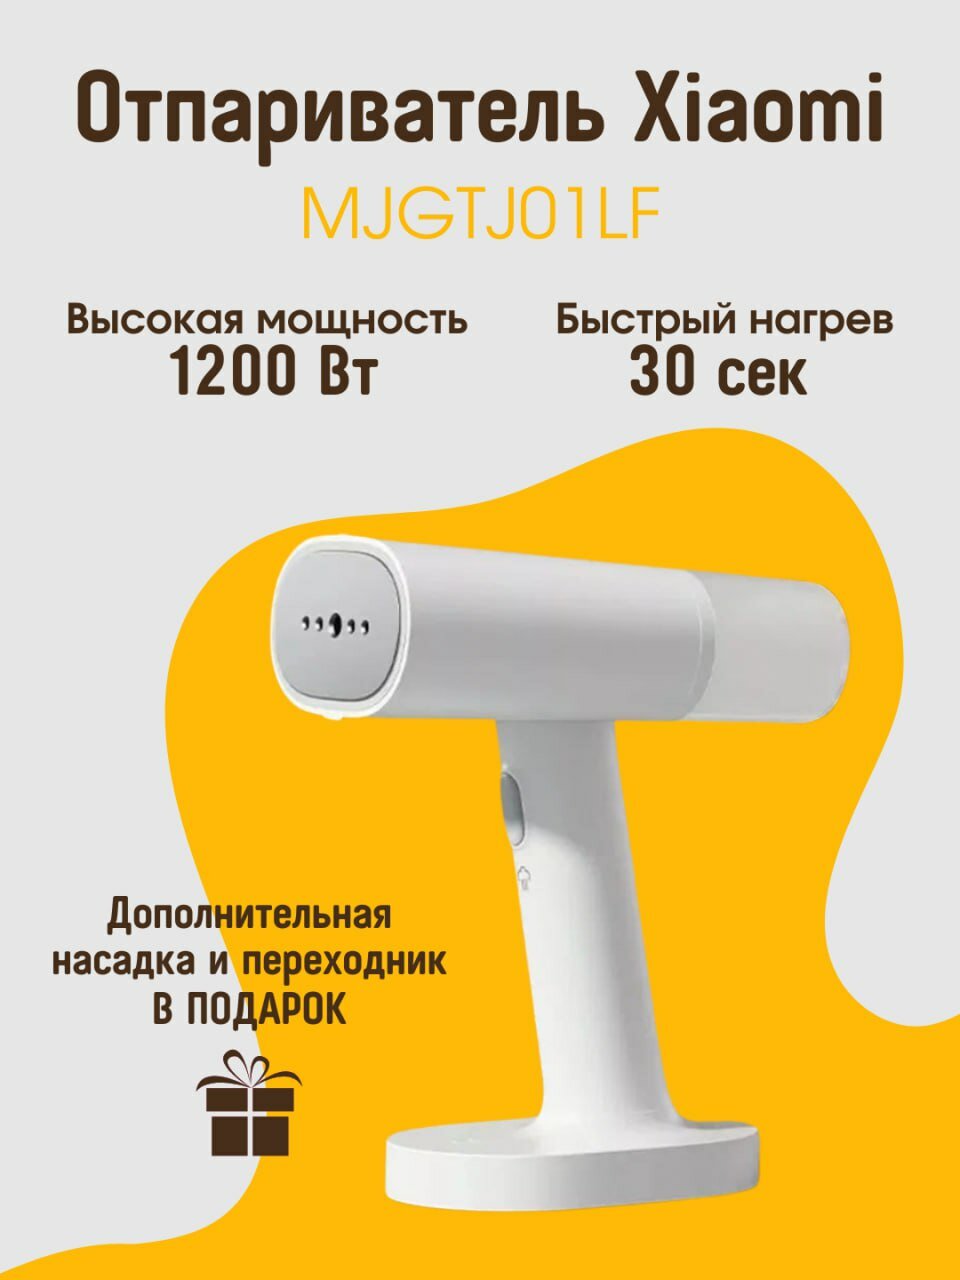 Портативный ручной отпариватель для одежды Хiaomi 1200 Вт (MJGTJ01LF)В комплекте перчатка переходник насадка